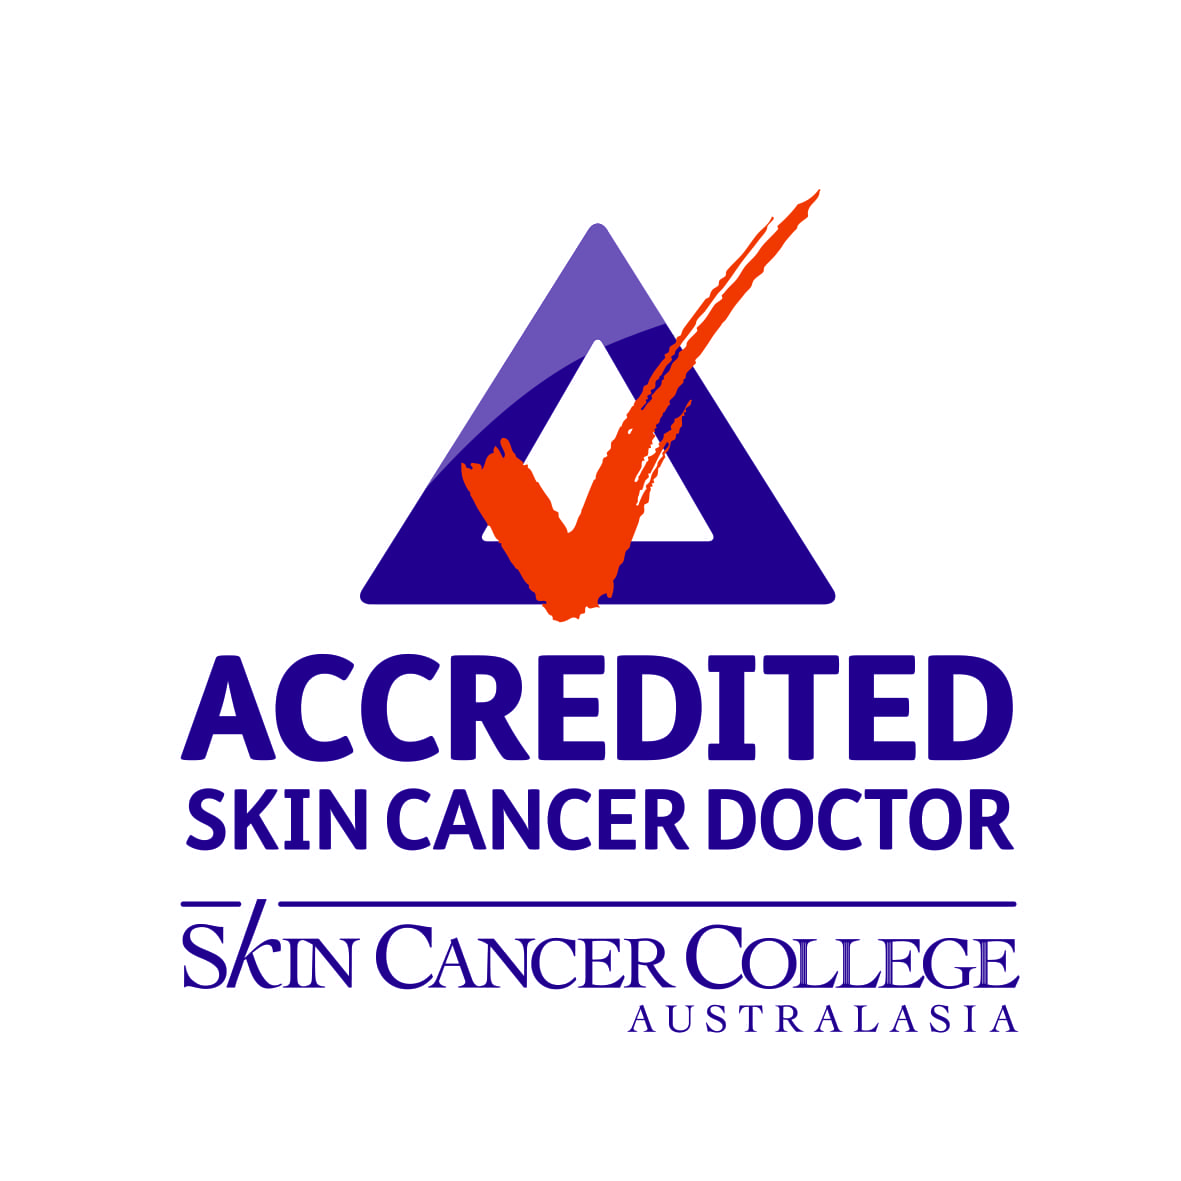 //grmedical.com.au/wp-content/uploads/2020/02/SCCA-Accredited-Doctor-logo-2017_port.jpg